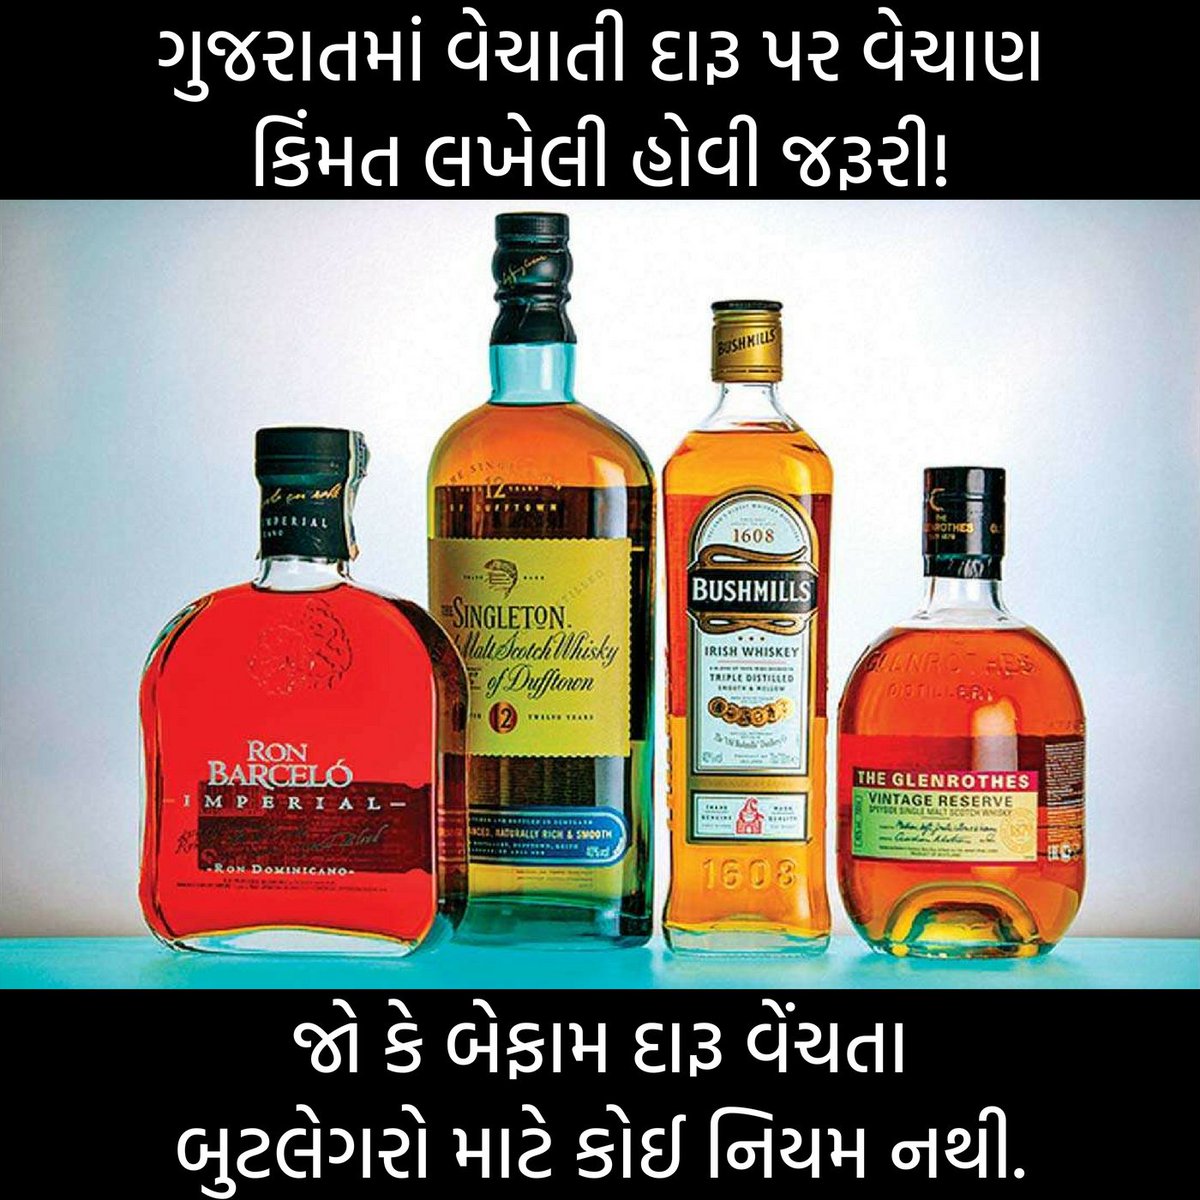 પરમીટ વાળી દુકાનોને ફરમાન જાહેર કરવામાં આવ્યું છે કે જે દારૂની બોટલ પર વેચાણ કિંમત છાપેલી નથી તે ના વેચવી. #Gujarat #LiquorShop #LiquorPermit #Alcohol